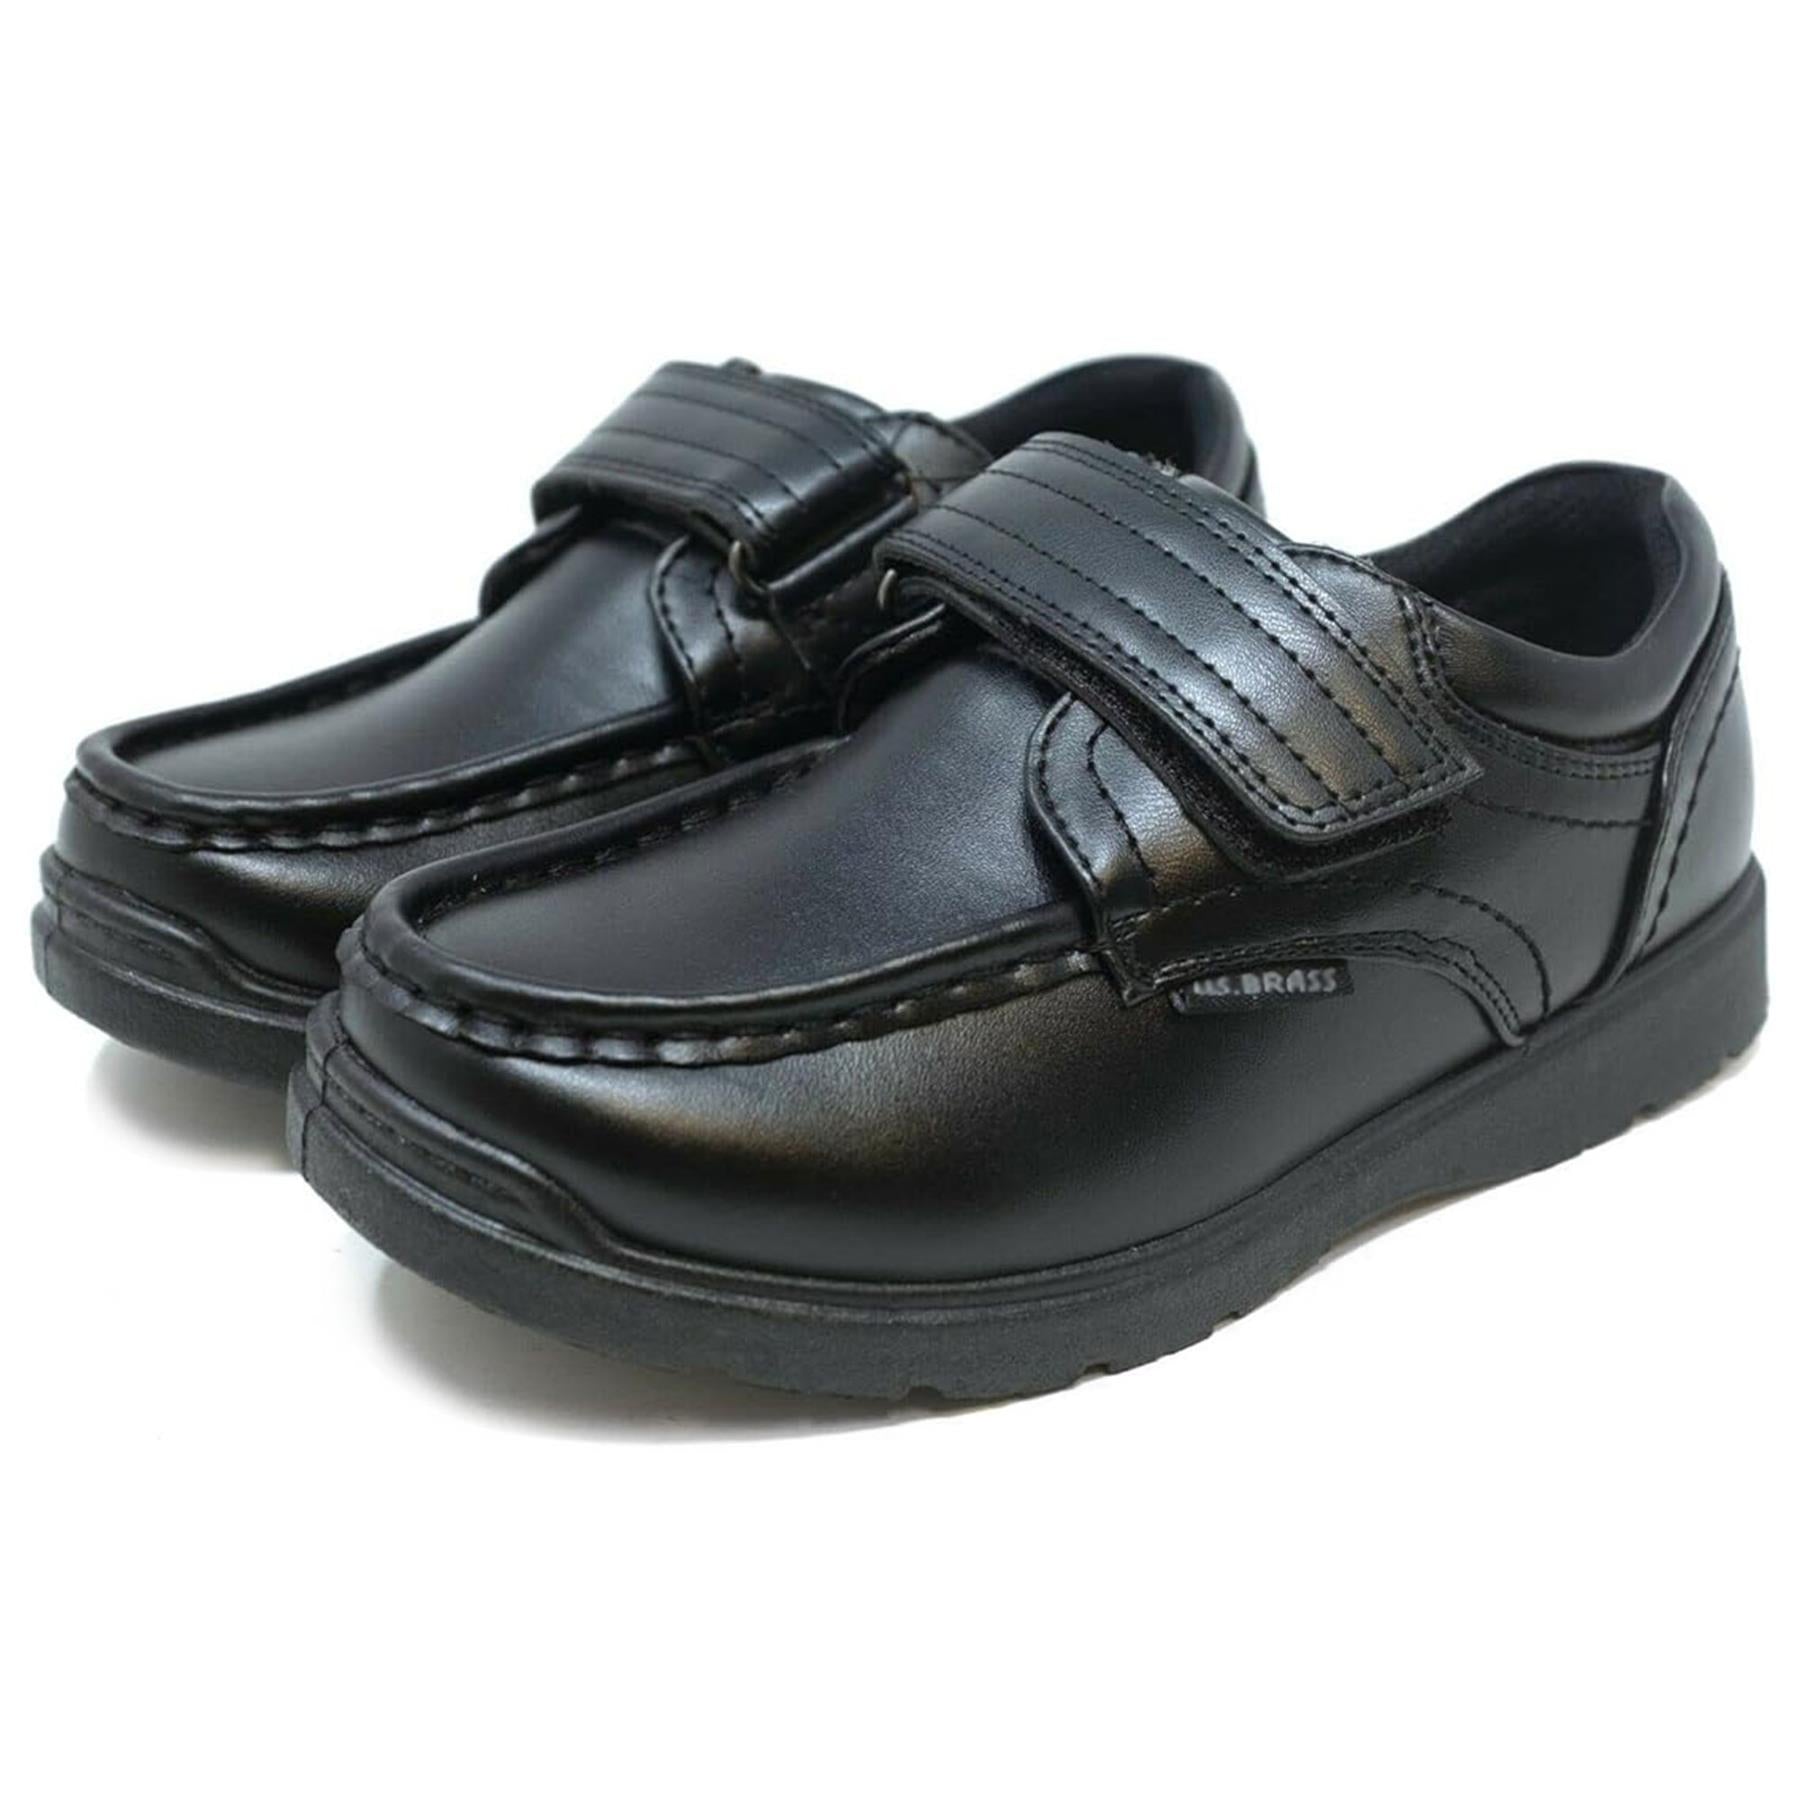 Boys School Shoes Wide Strap Easy Fasten Trainer PU Leather Memory Foam Sneakers